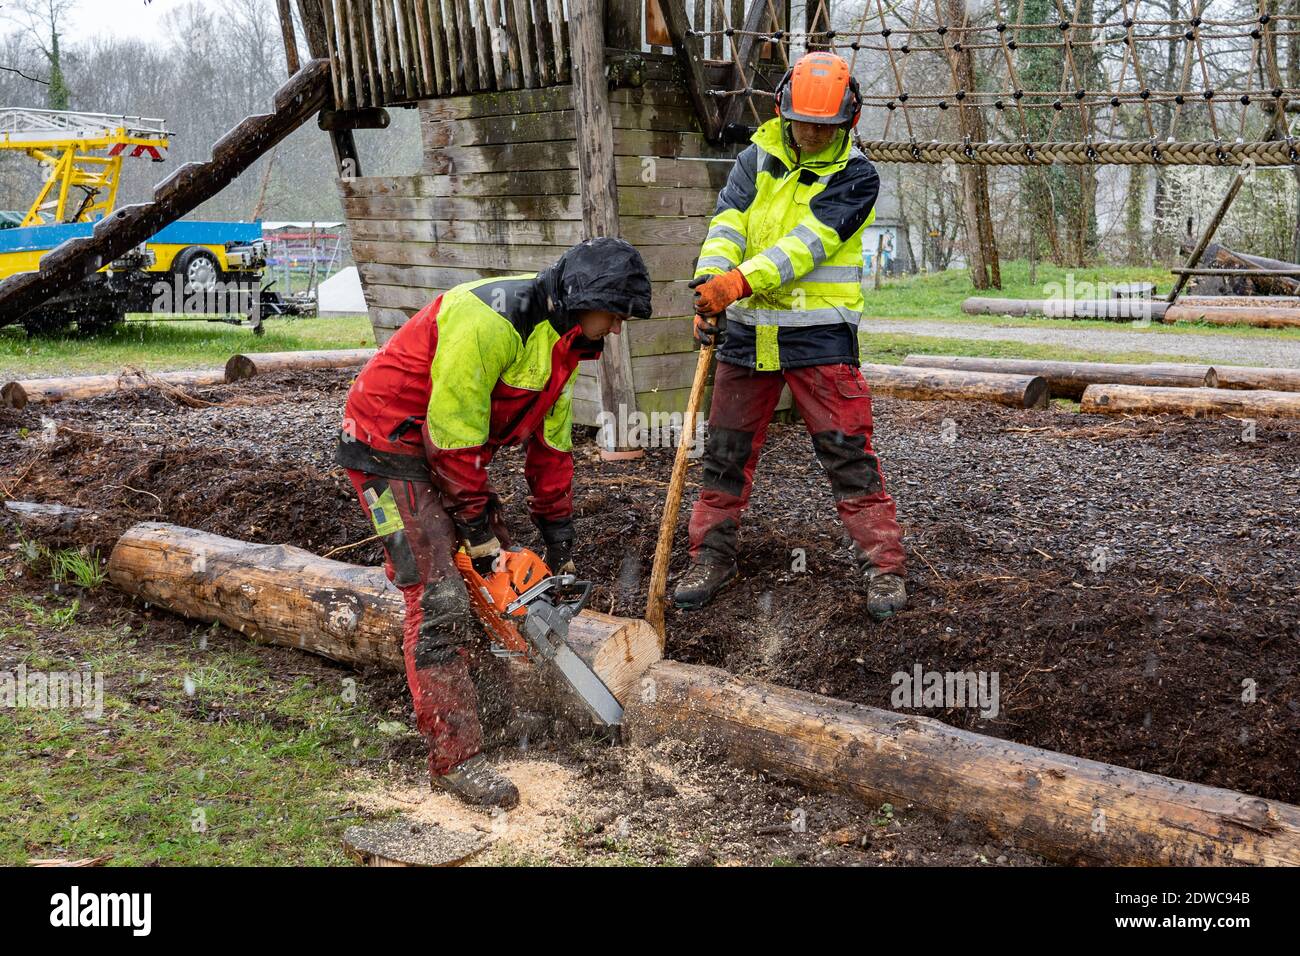 Holzfäller Schneiden Baumstamm Mit Kettensägen An Regnerischen Tagen.  Teamarbeit Stockfotografie - Alamy